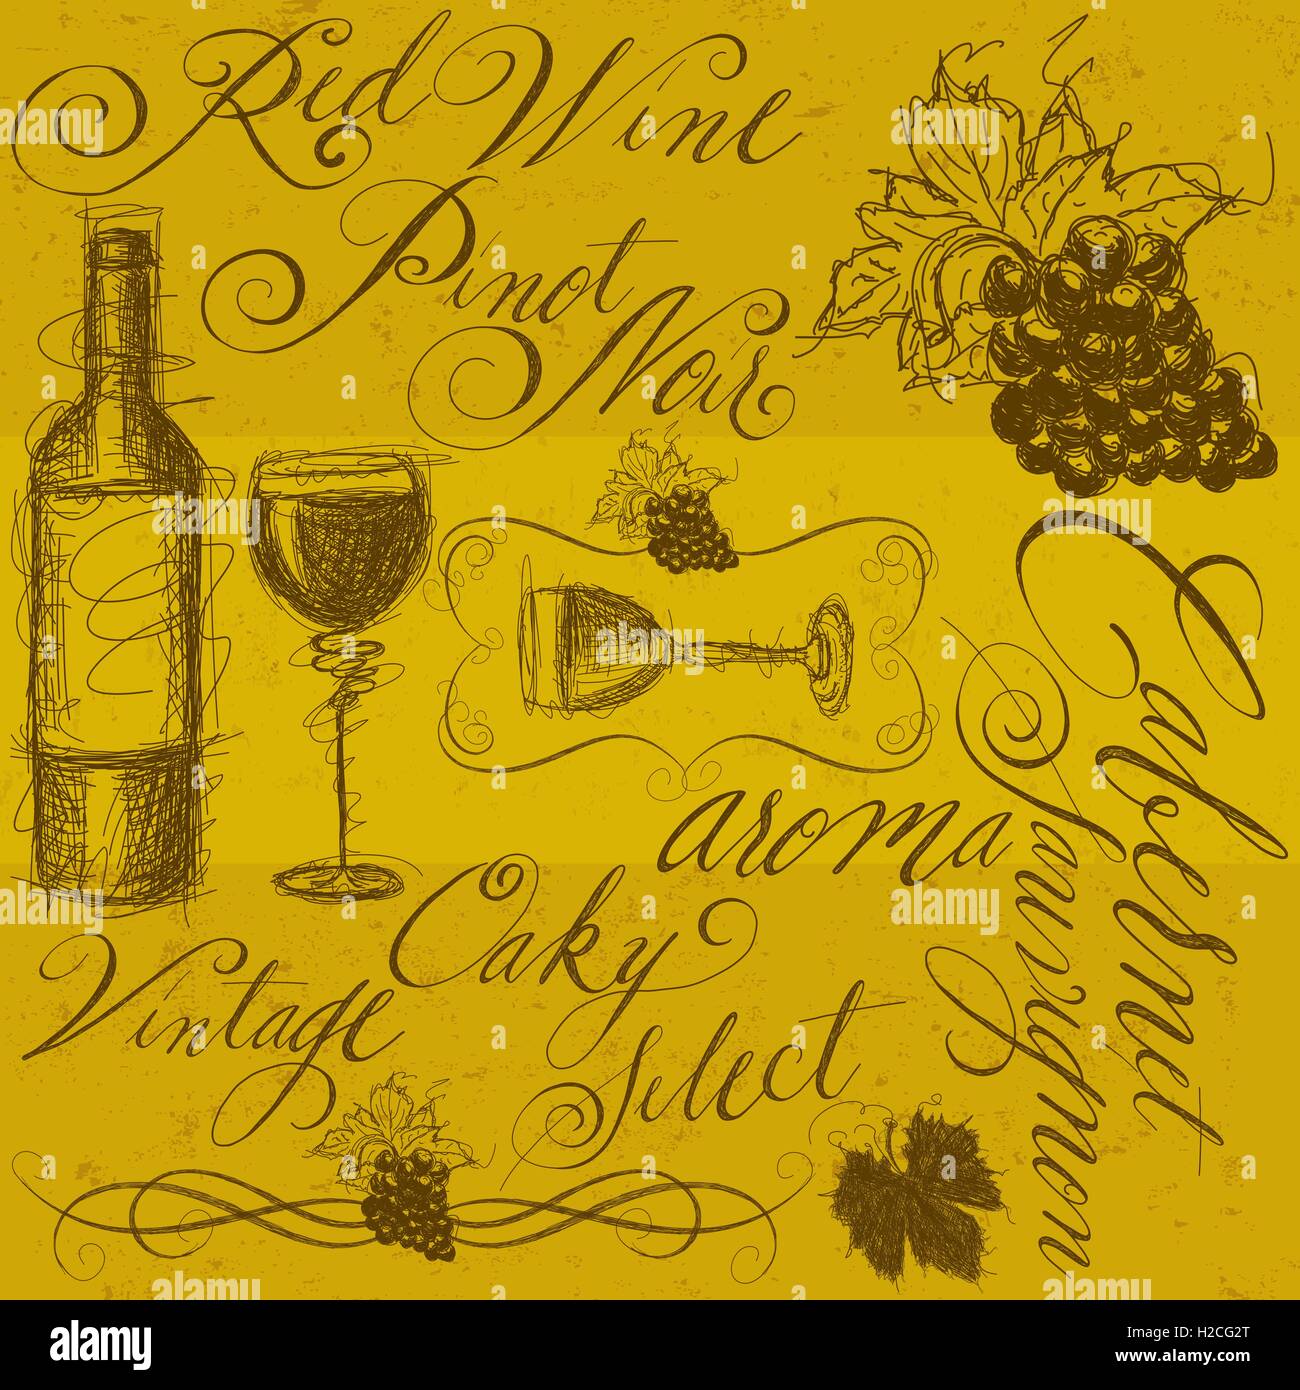 Il vino con la calligrafia Sketchy, disegnato a mano la bottiglia di vino, bicchieri da vino, uva, vite scorre, con la calligrafia. Illustrazione Vettoriale